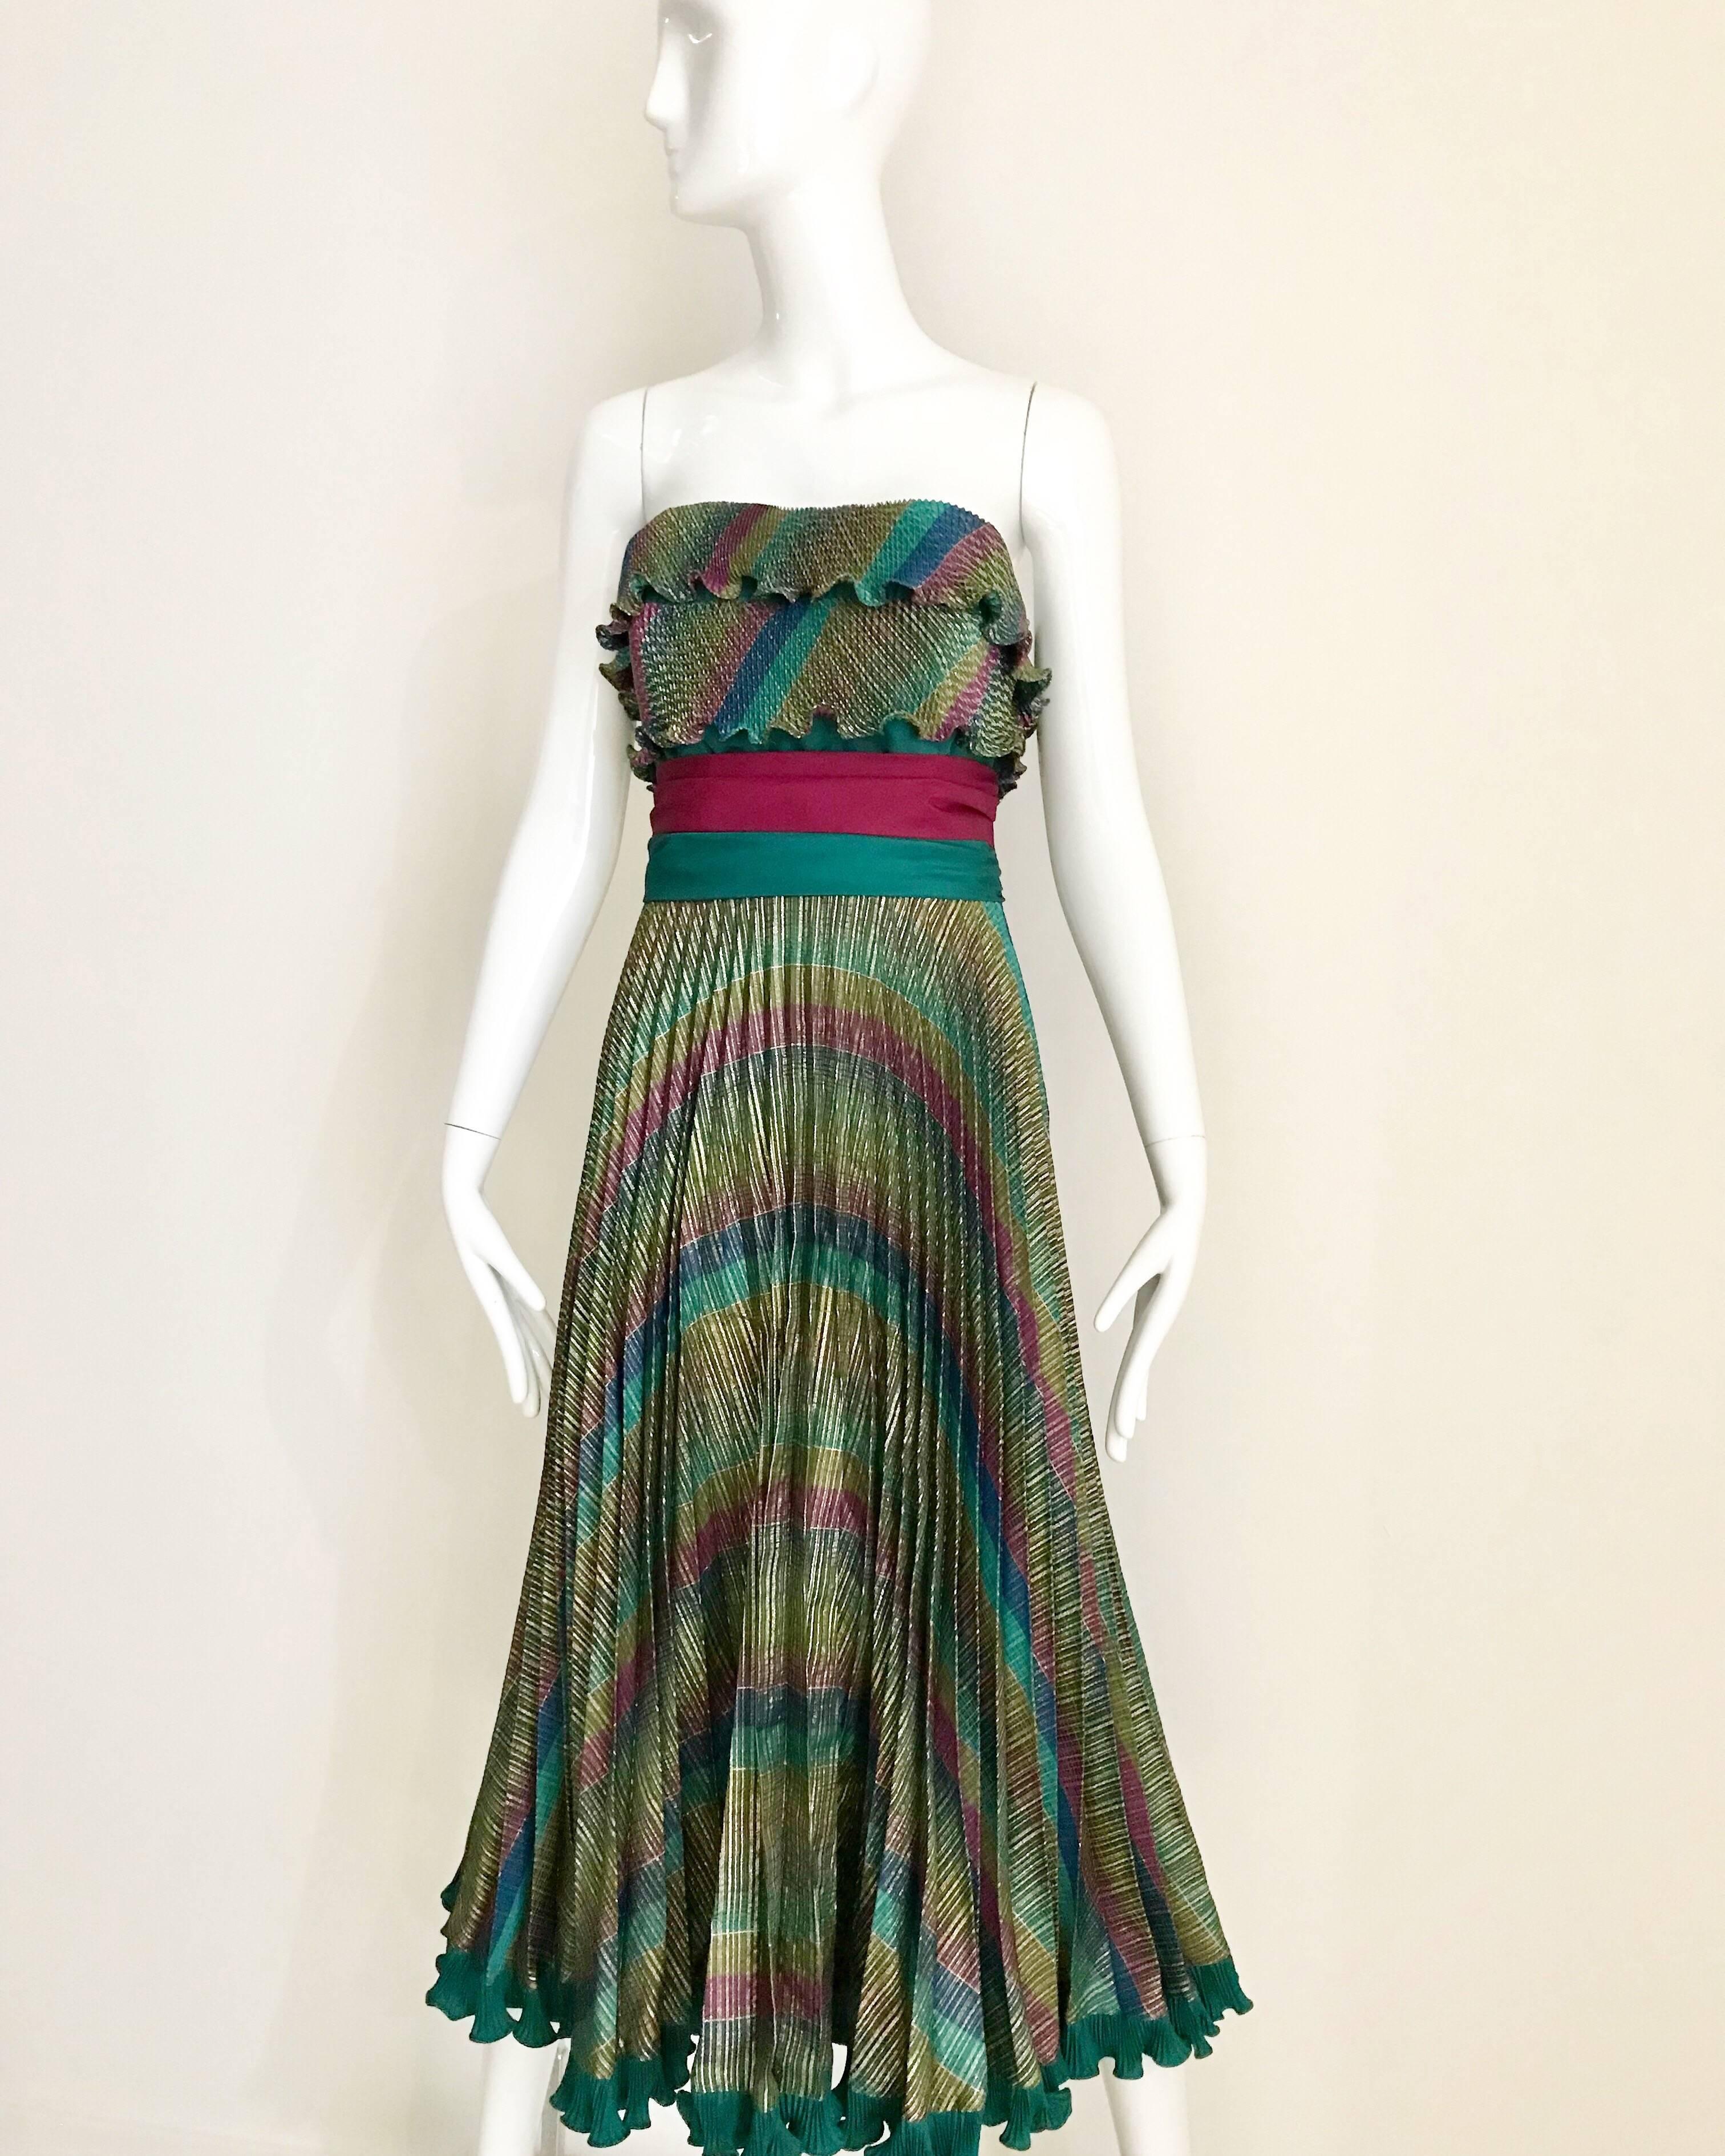 Cette robe Frank Usher des années 80 est un baril de plaisir ! Le bustier combine une palette de couleurs arc-en-ciel avec un plissage complet, et la robe est bordée d'un ourlet à volants.
Un motif en forme de guillotine affine votre taille et